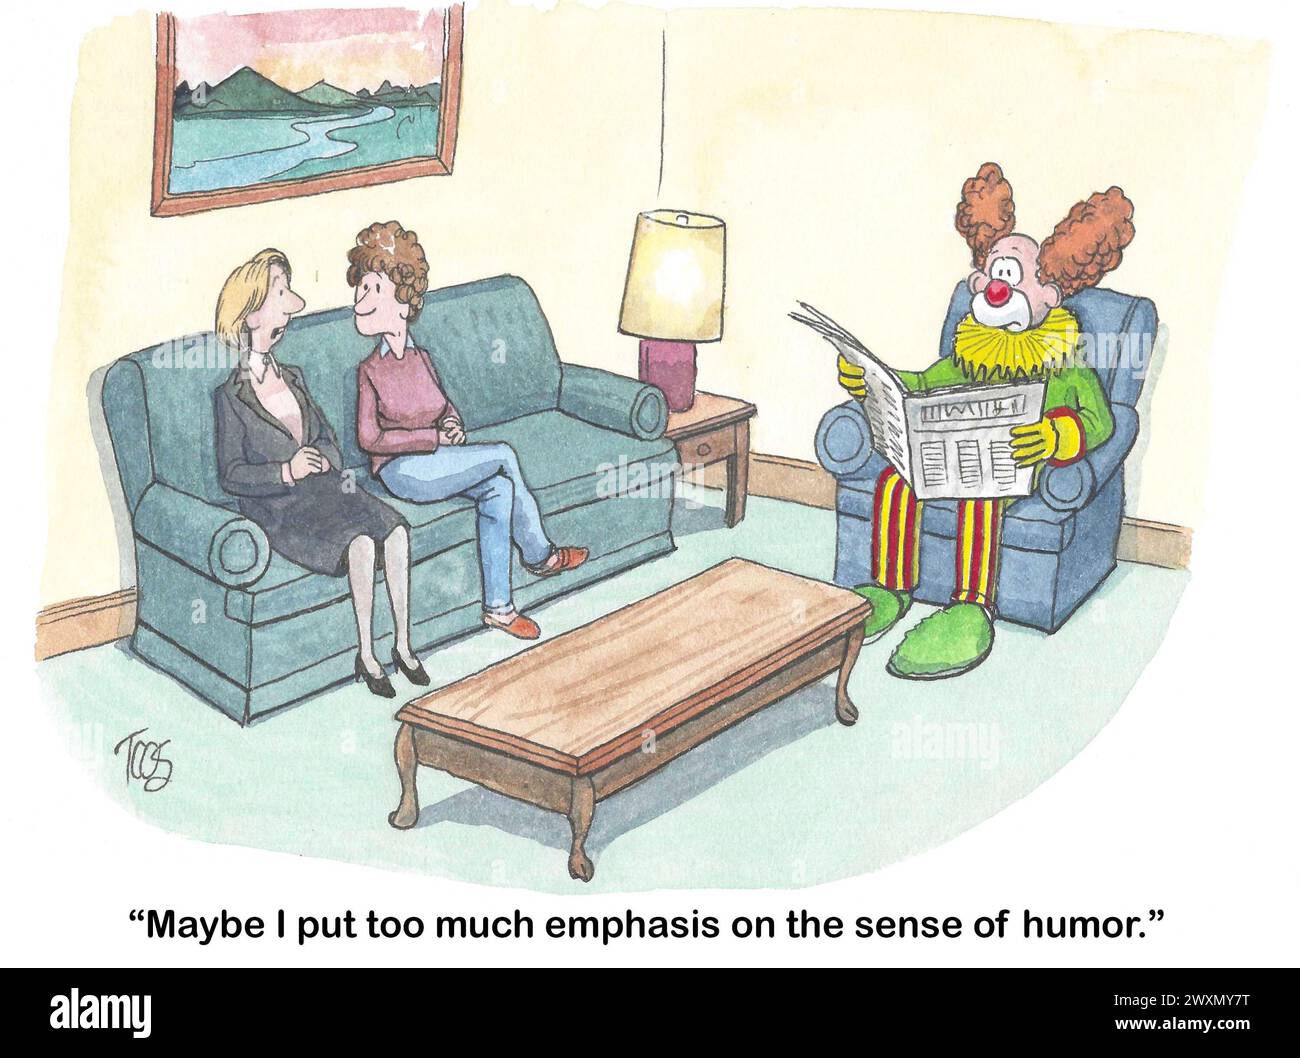 Farb-Cartoon einer Frau, deren Mann ein Clown ist, sie legt zu viel Wert auf Humor. Stockfoto